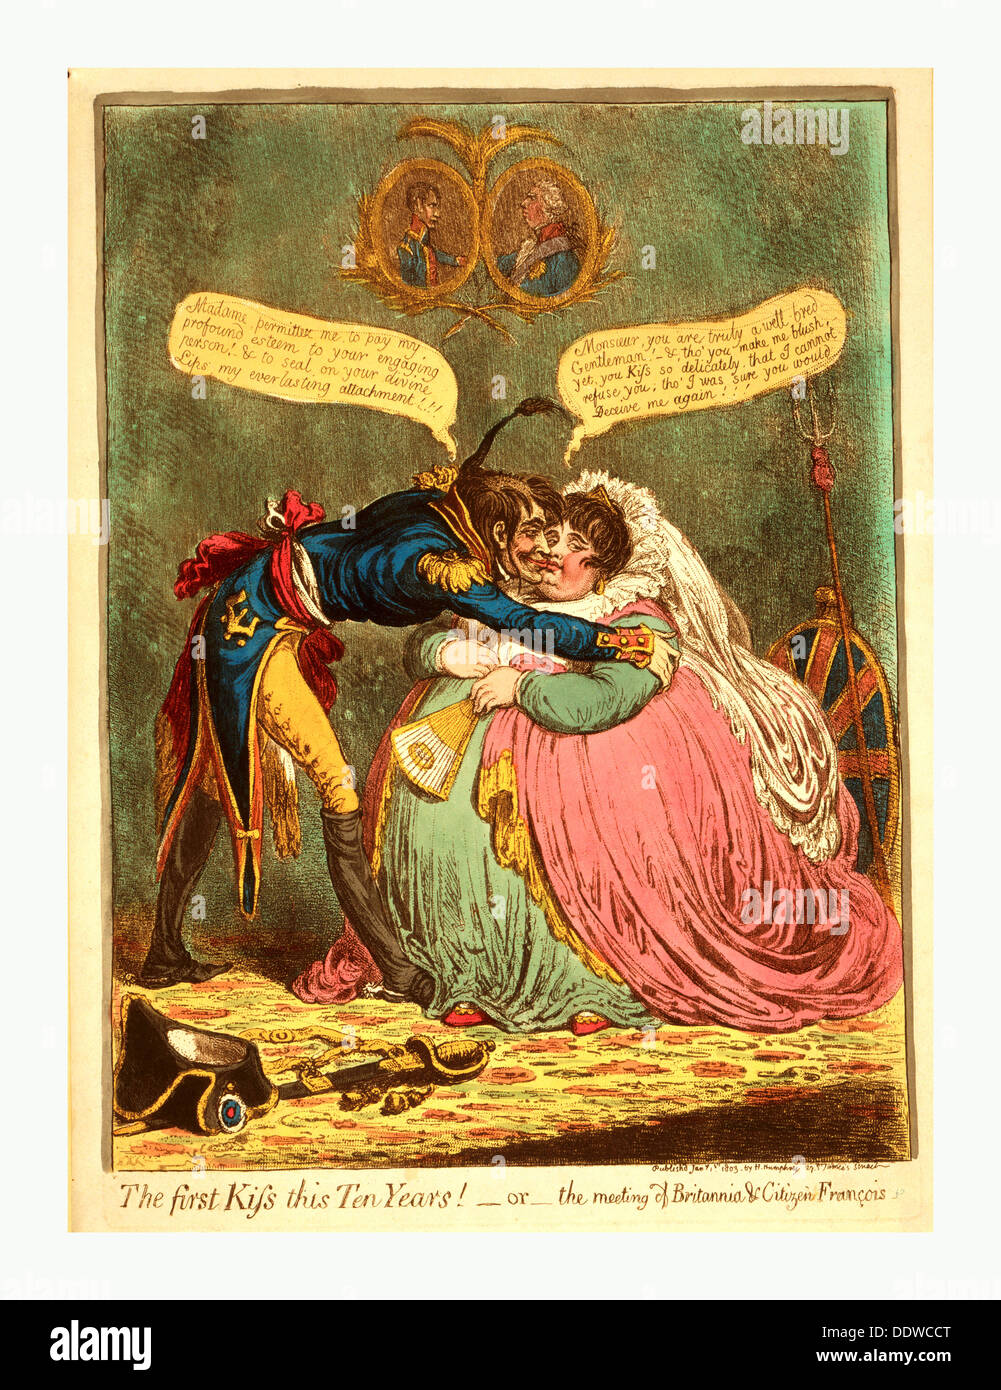 Il primo bacio questo dieci anni! - O - la riunione di Britannia & Cittadino Francois, Gillray James, 1756 1815, incisore, [Londra] Foto Stock